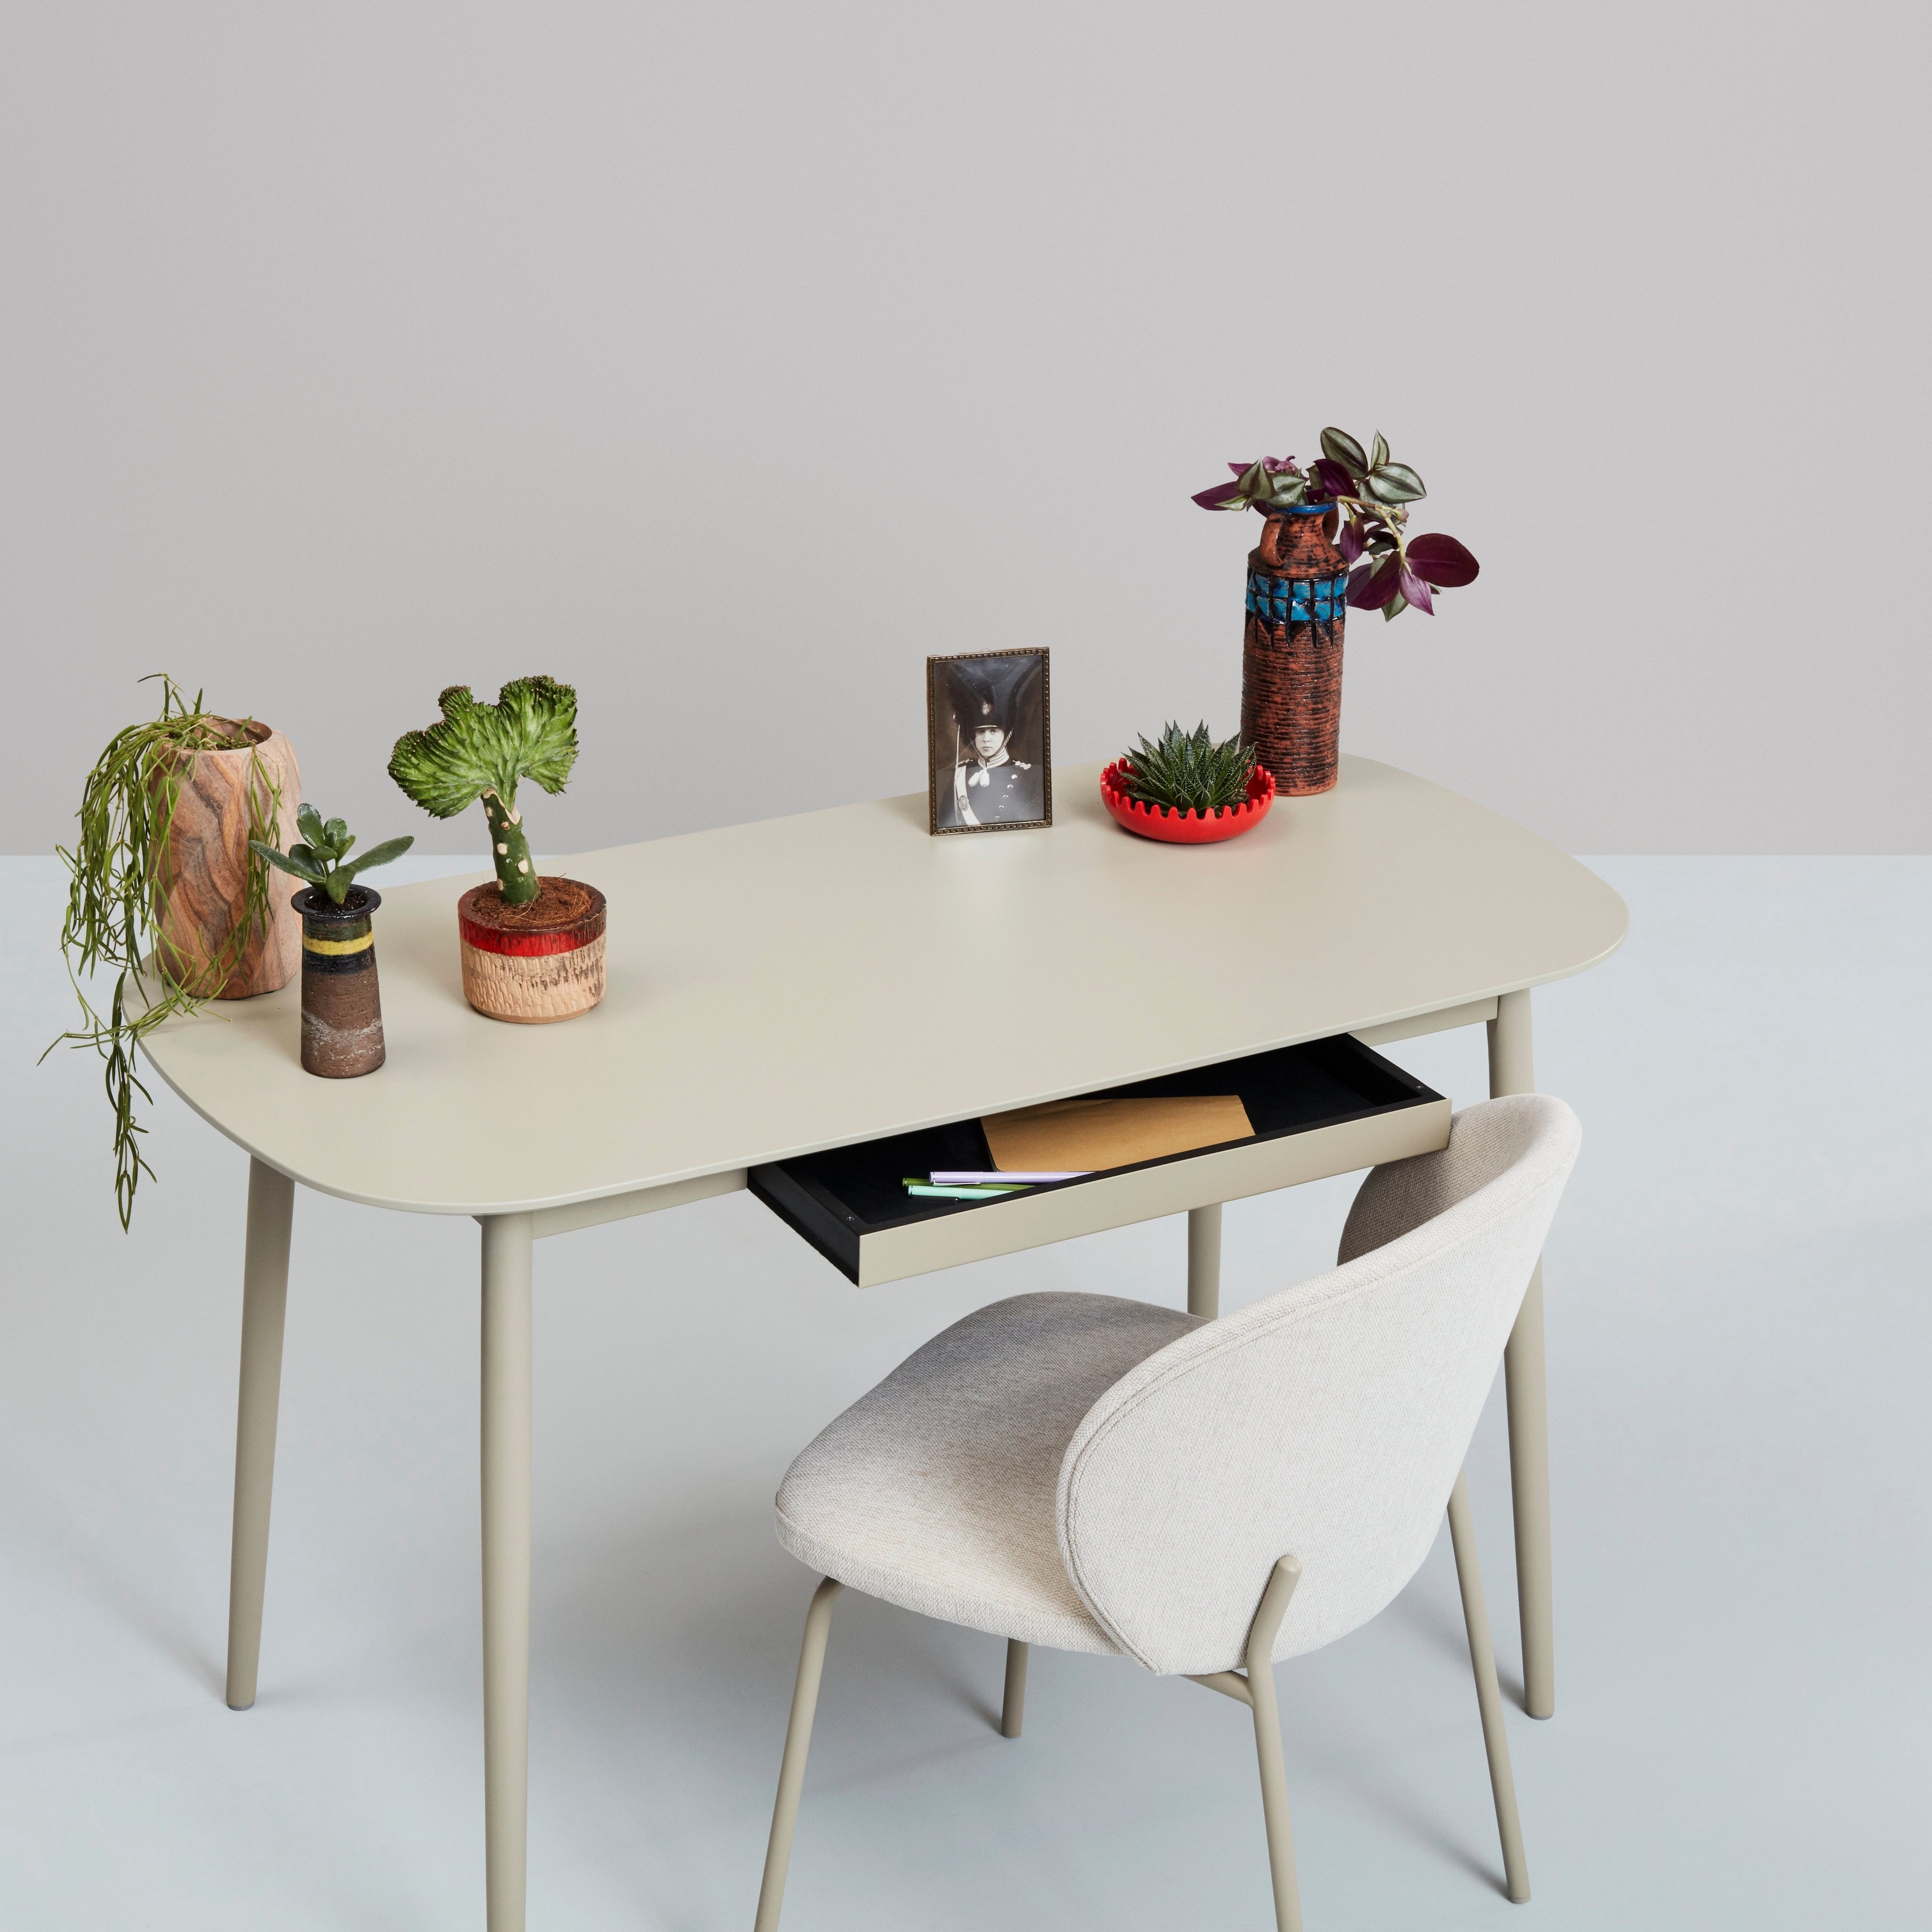 Vitt skrivbord med växter, dekorationer och en stol mot en neutral bakgrund.